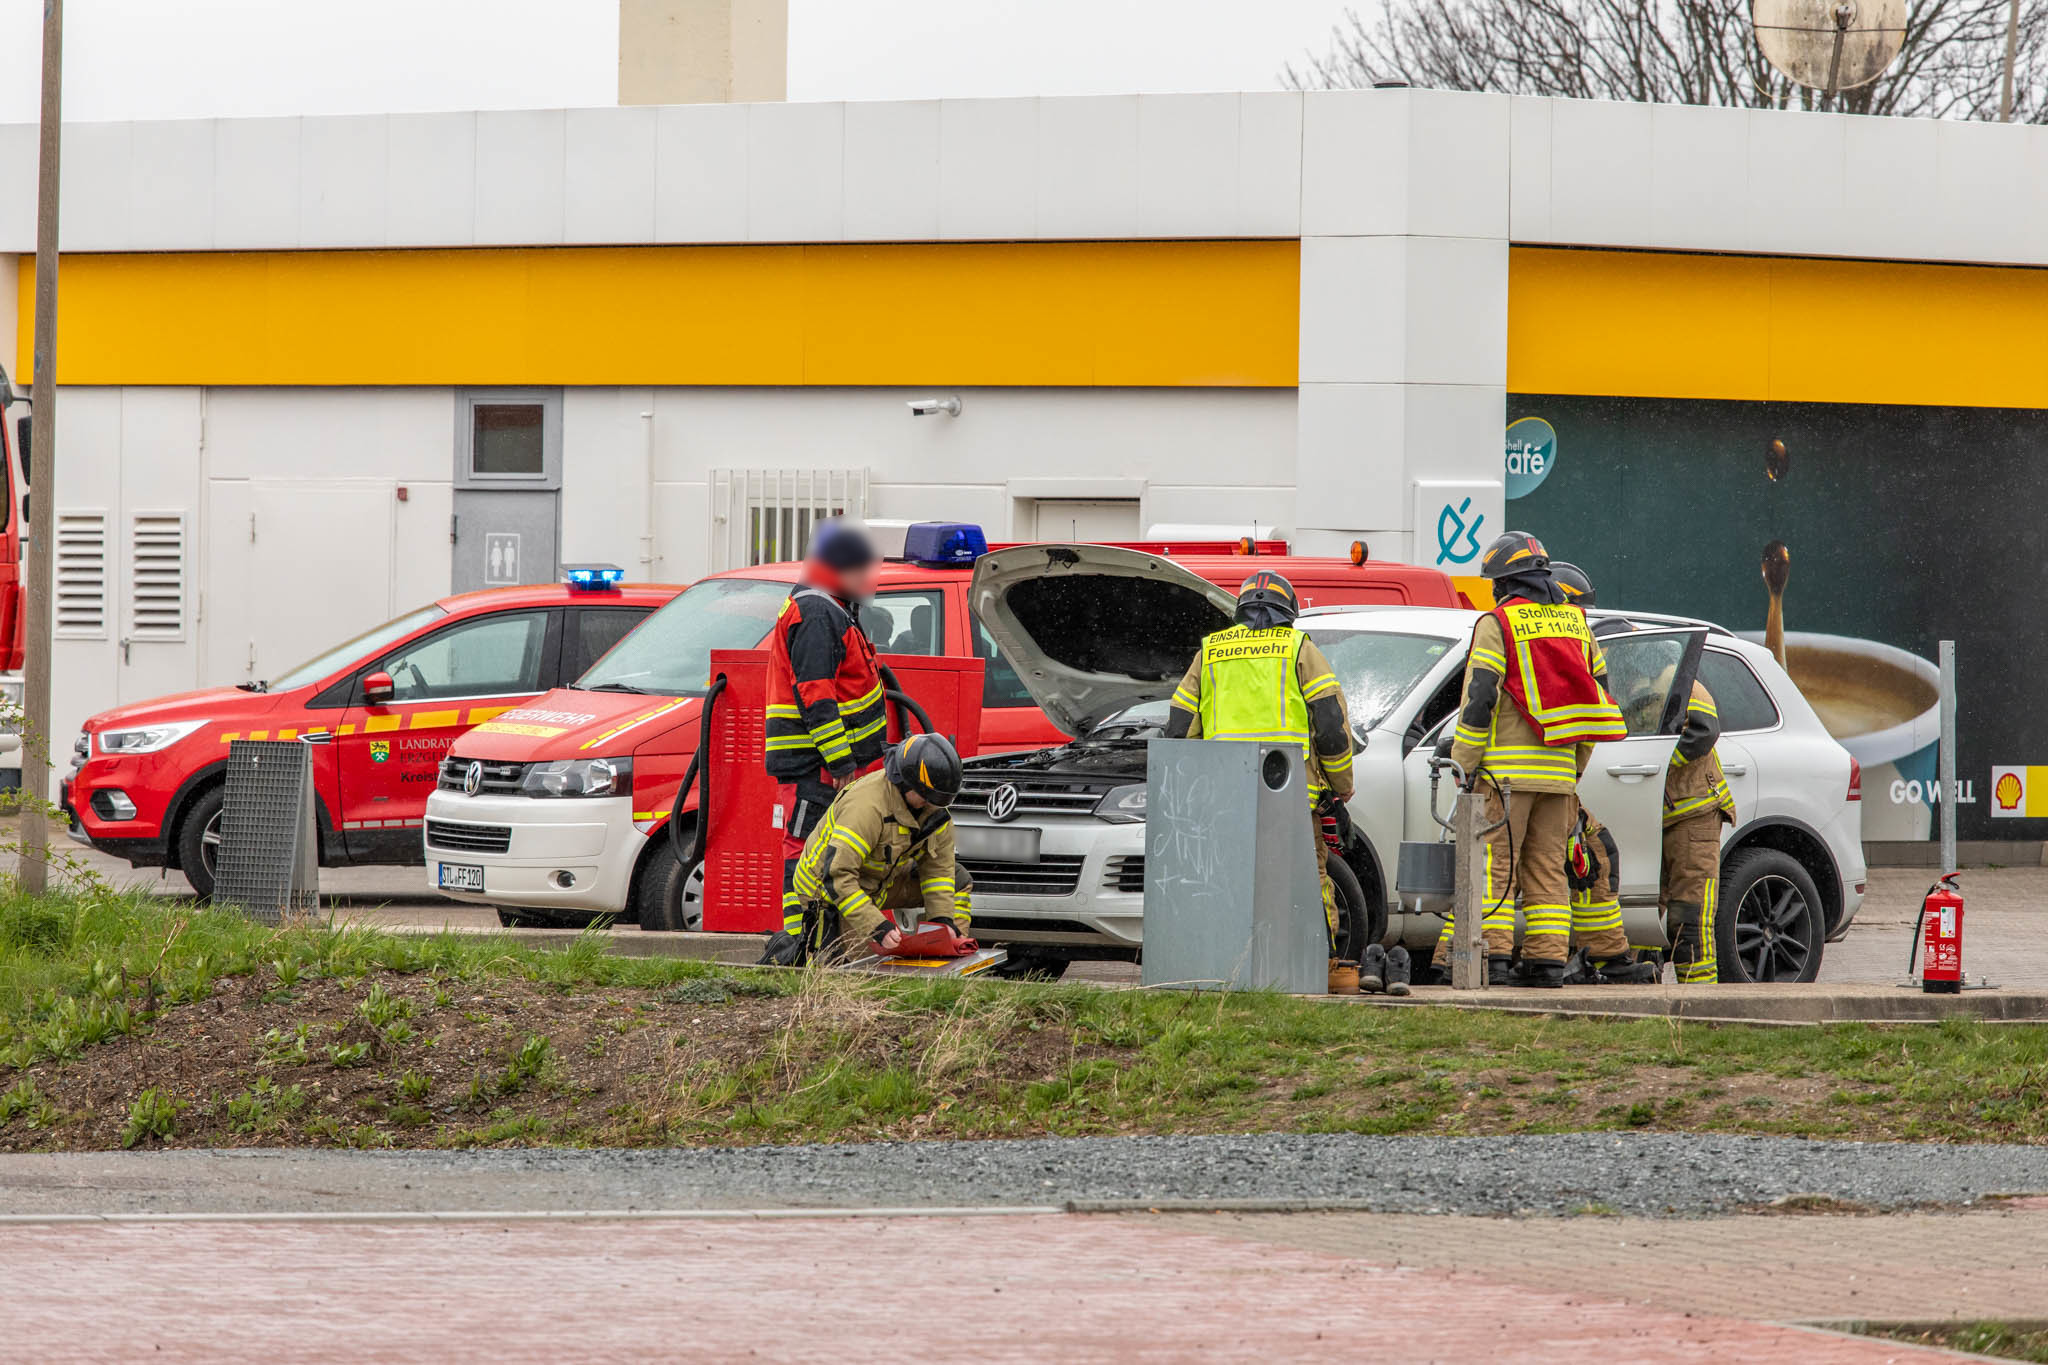 Das hätte schlimm ausgehen können. Ein Auto fing in einer Tankstelle in Stollberg Feuer. Der Fahrer konnte die Flammen löschen. Foto: André März